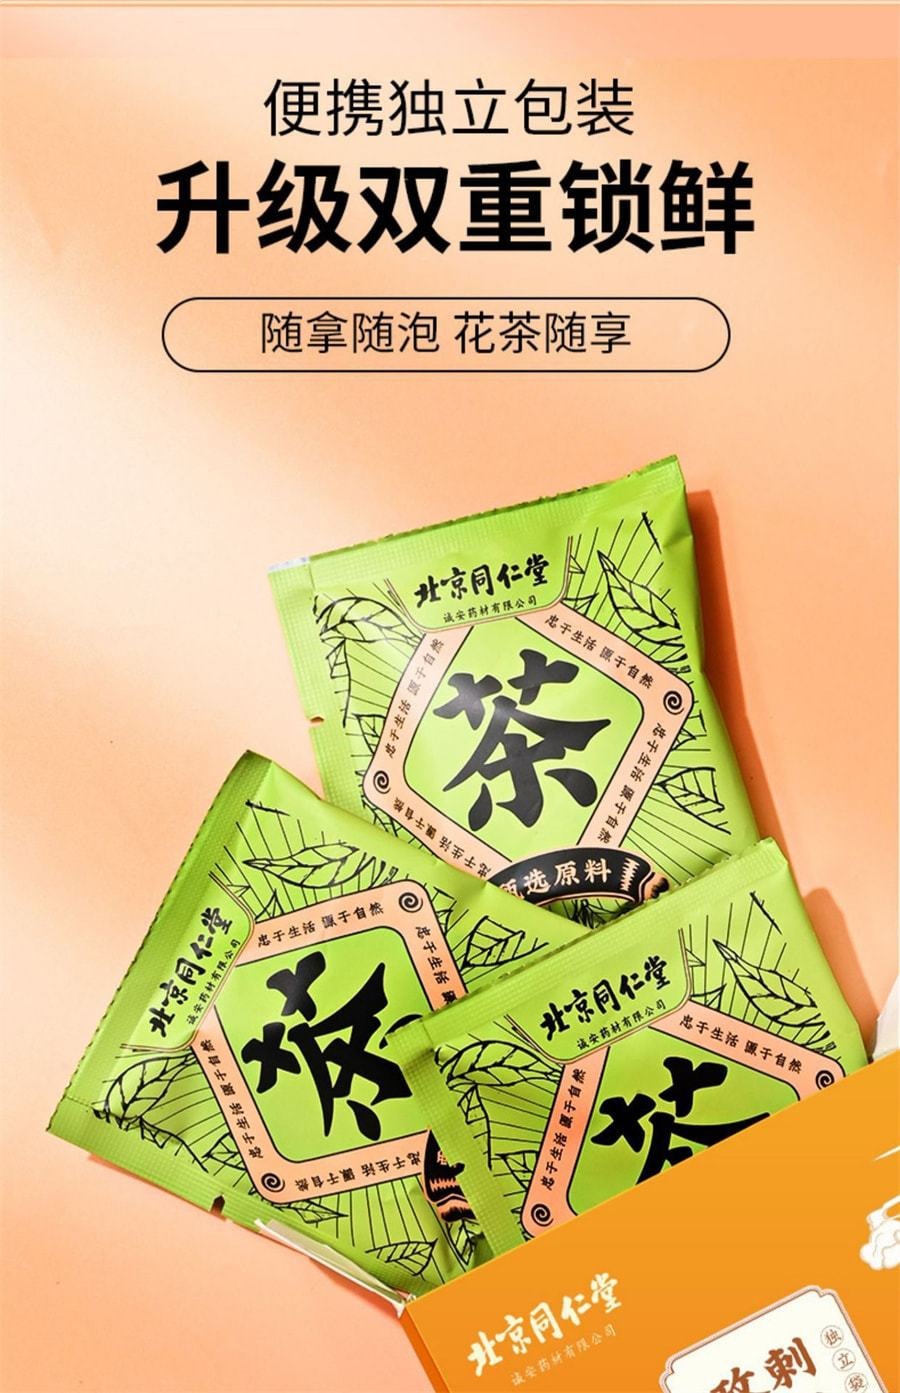 中国 北京同仁堂 刺梨桑葚玫瑰茶 早c晚a茶 滋补养生茶 60g/盒